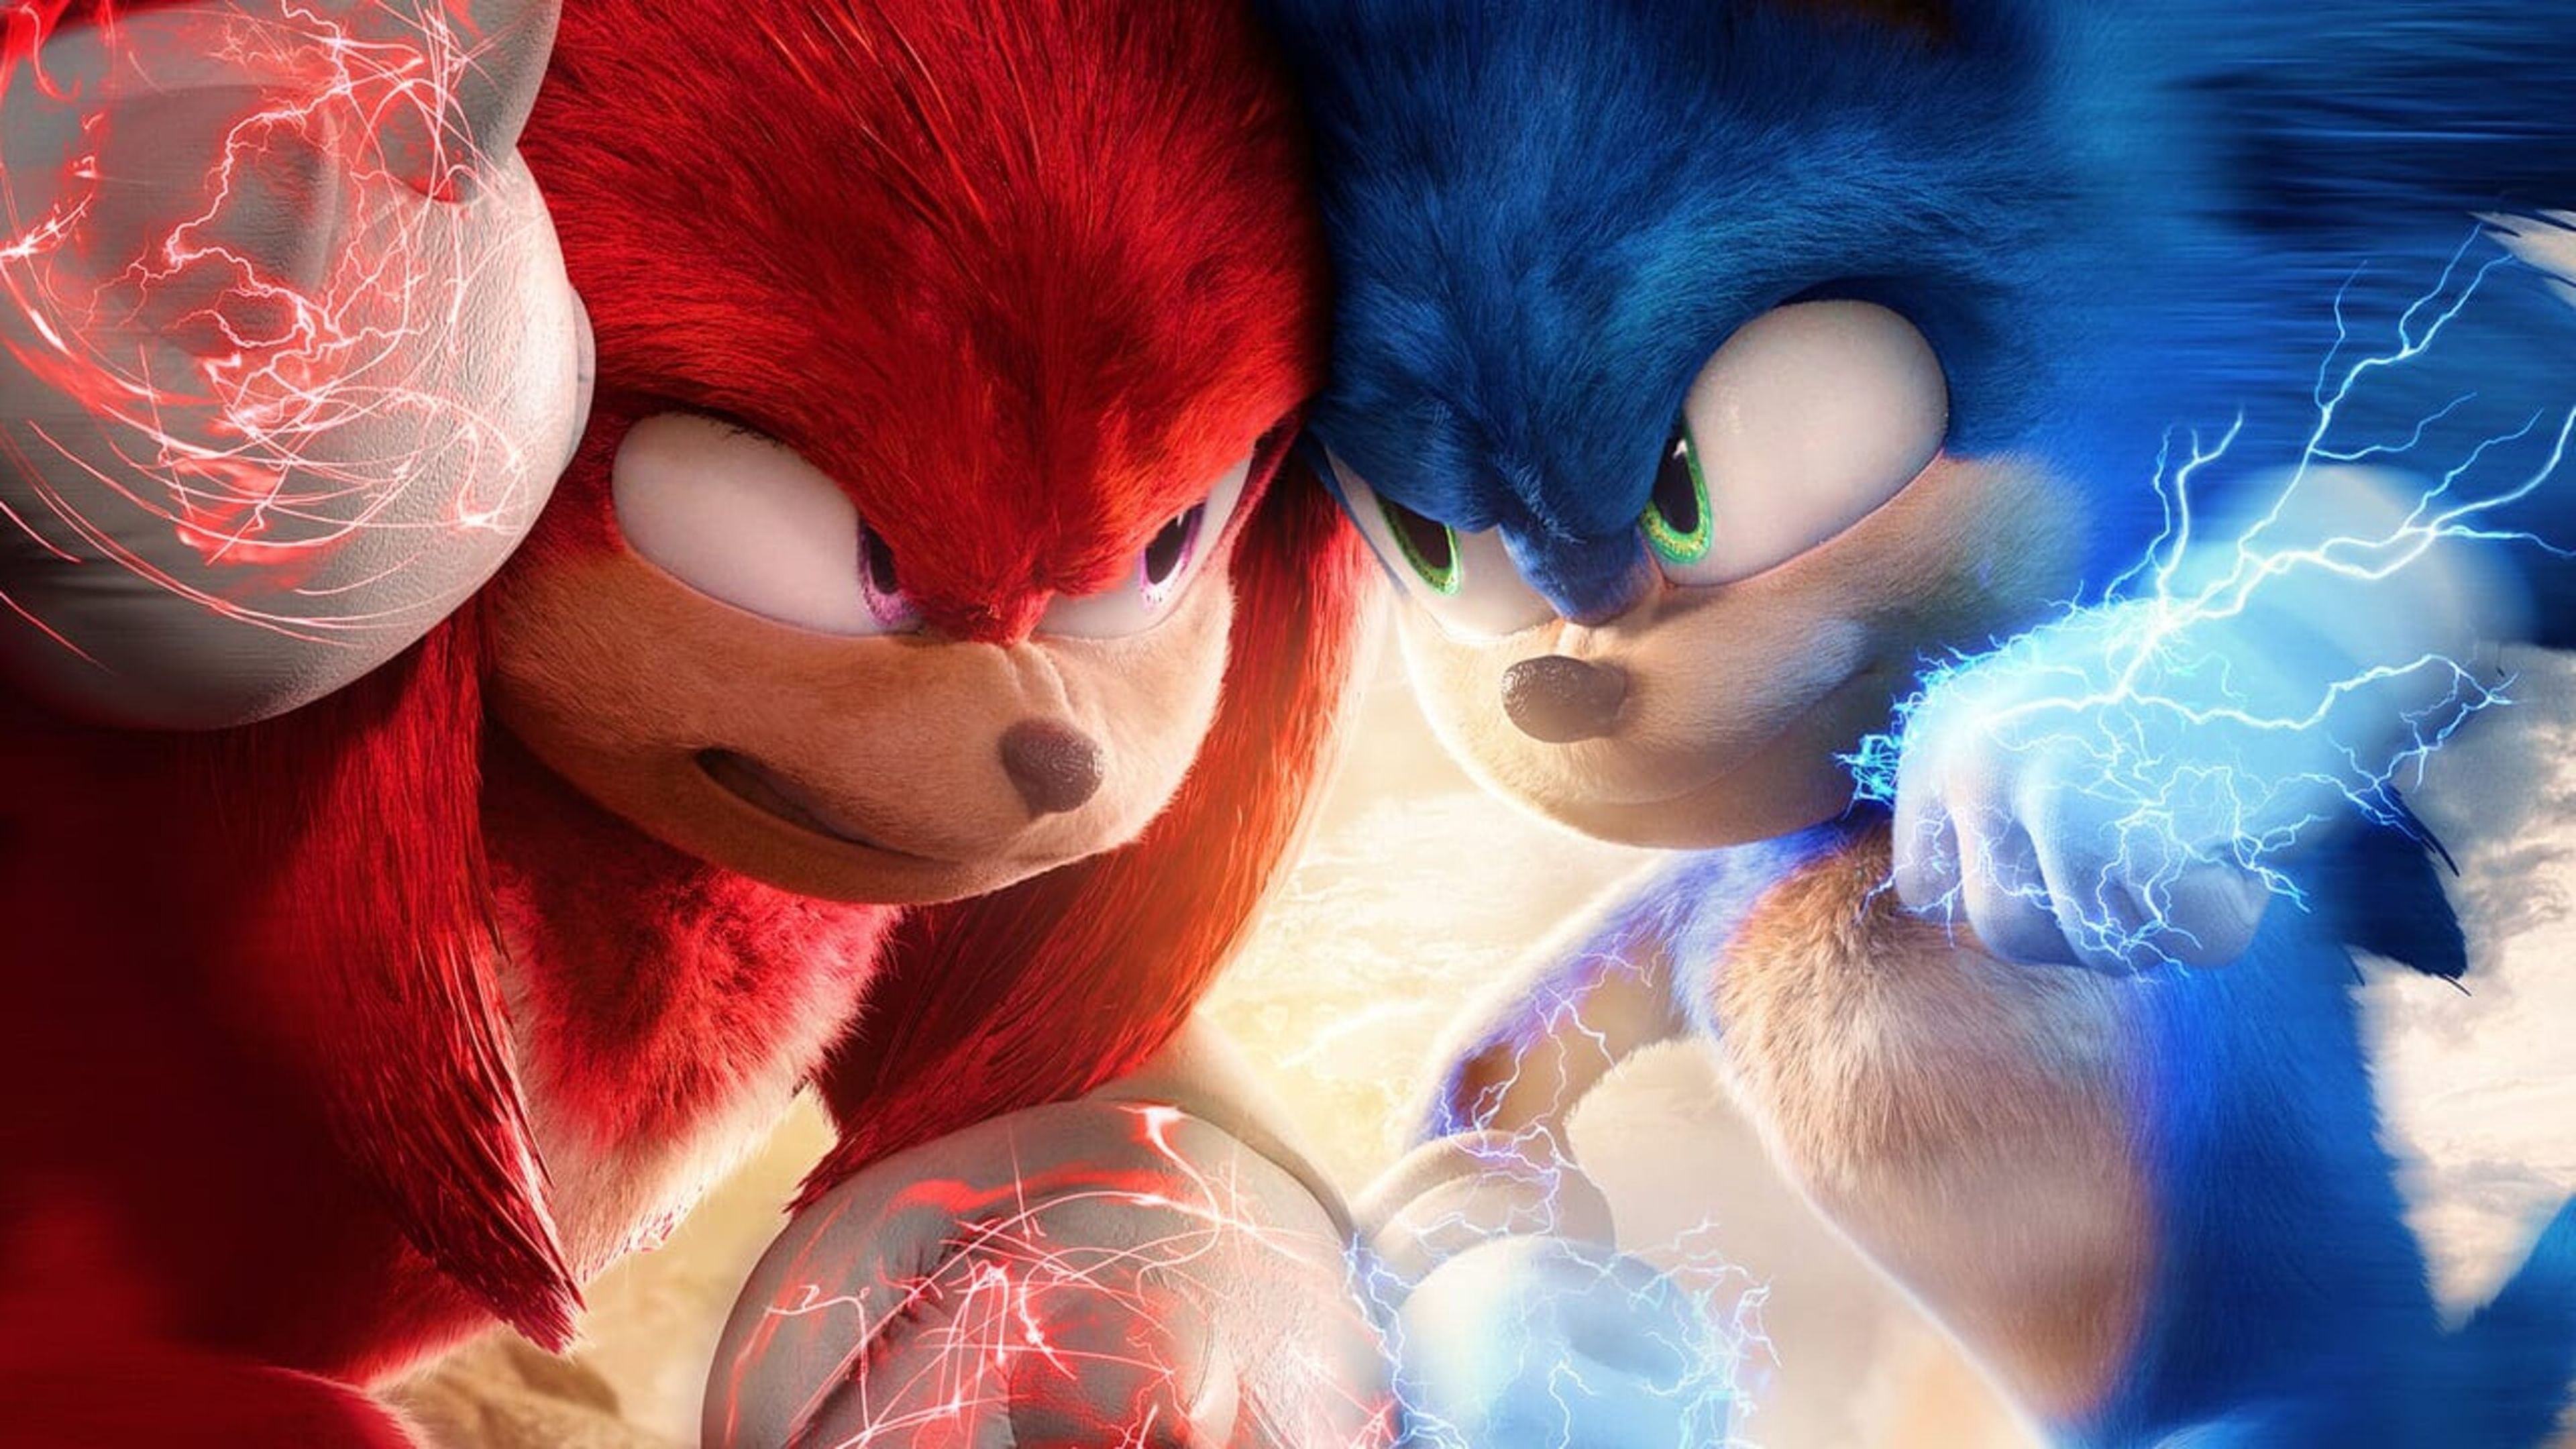 Knuckles, la nueva serie de Sonic que podrás ver en SkyShowTime, se estrena con buena crítica en Rotten Tomatoes